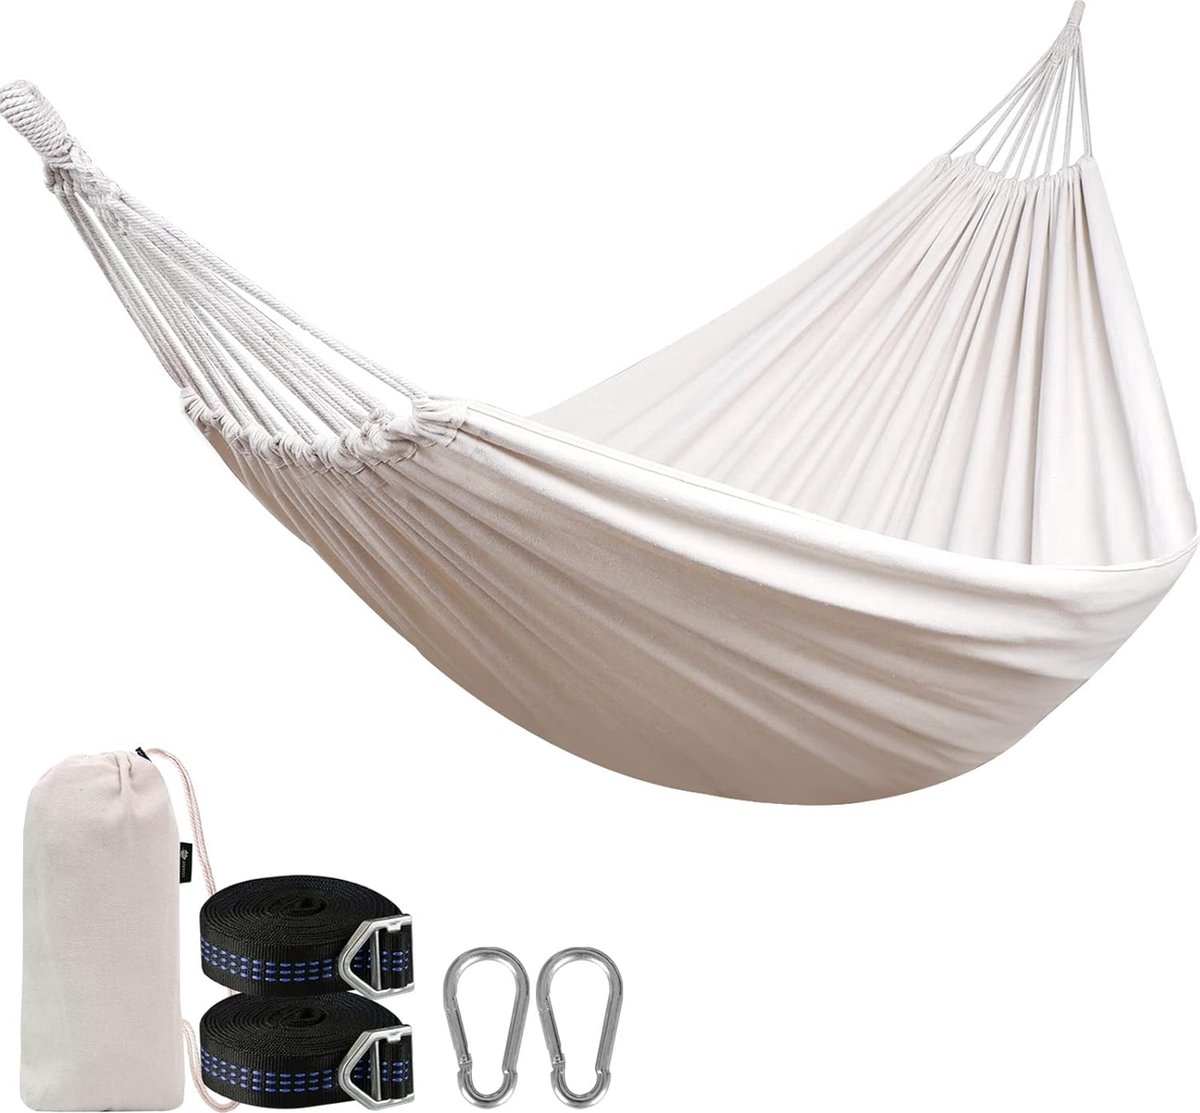 Hangmat outdoor katoen grote camping hangmat met gratis verstelbare riemen accessoires, draagbare hangmatten met draagtas voor tuin, terras, erf (4801288659241)